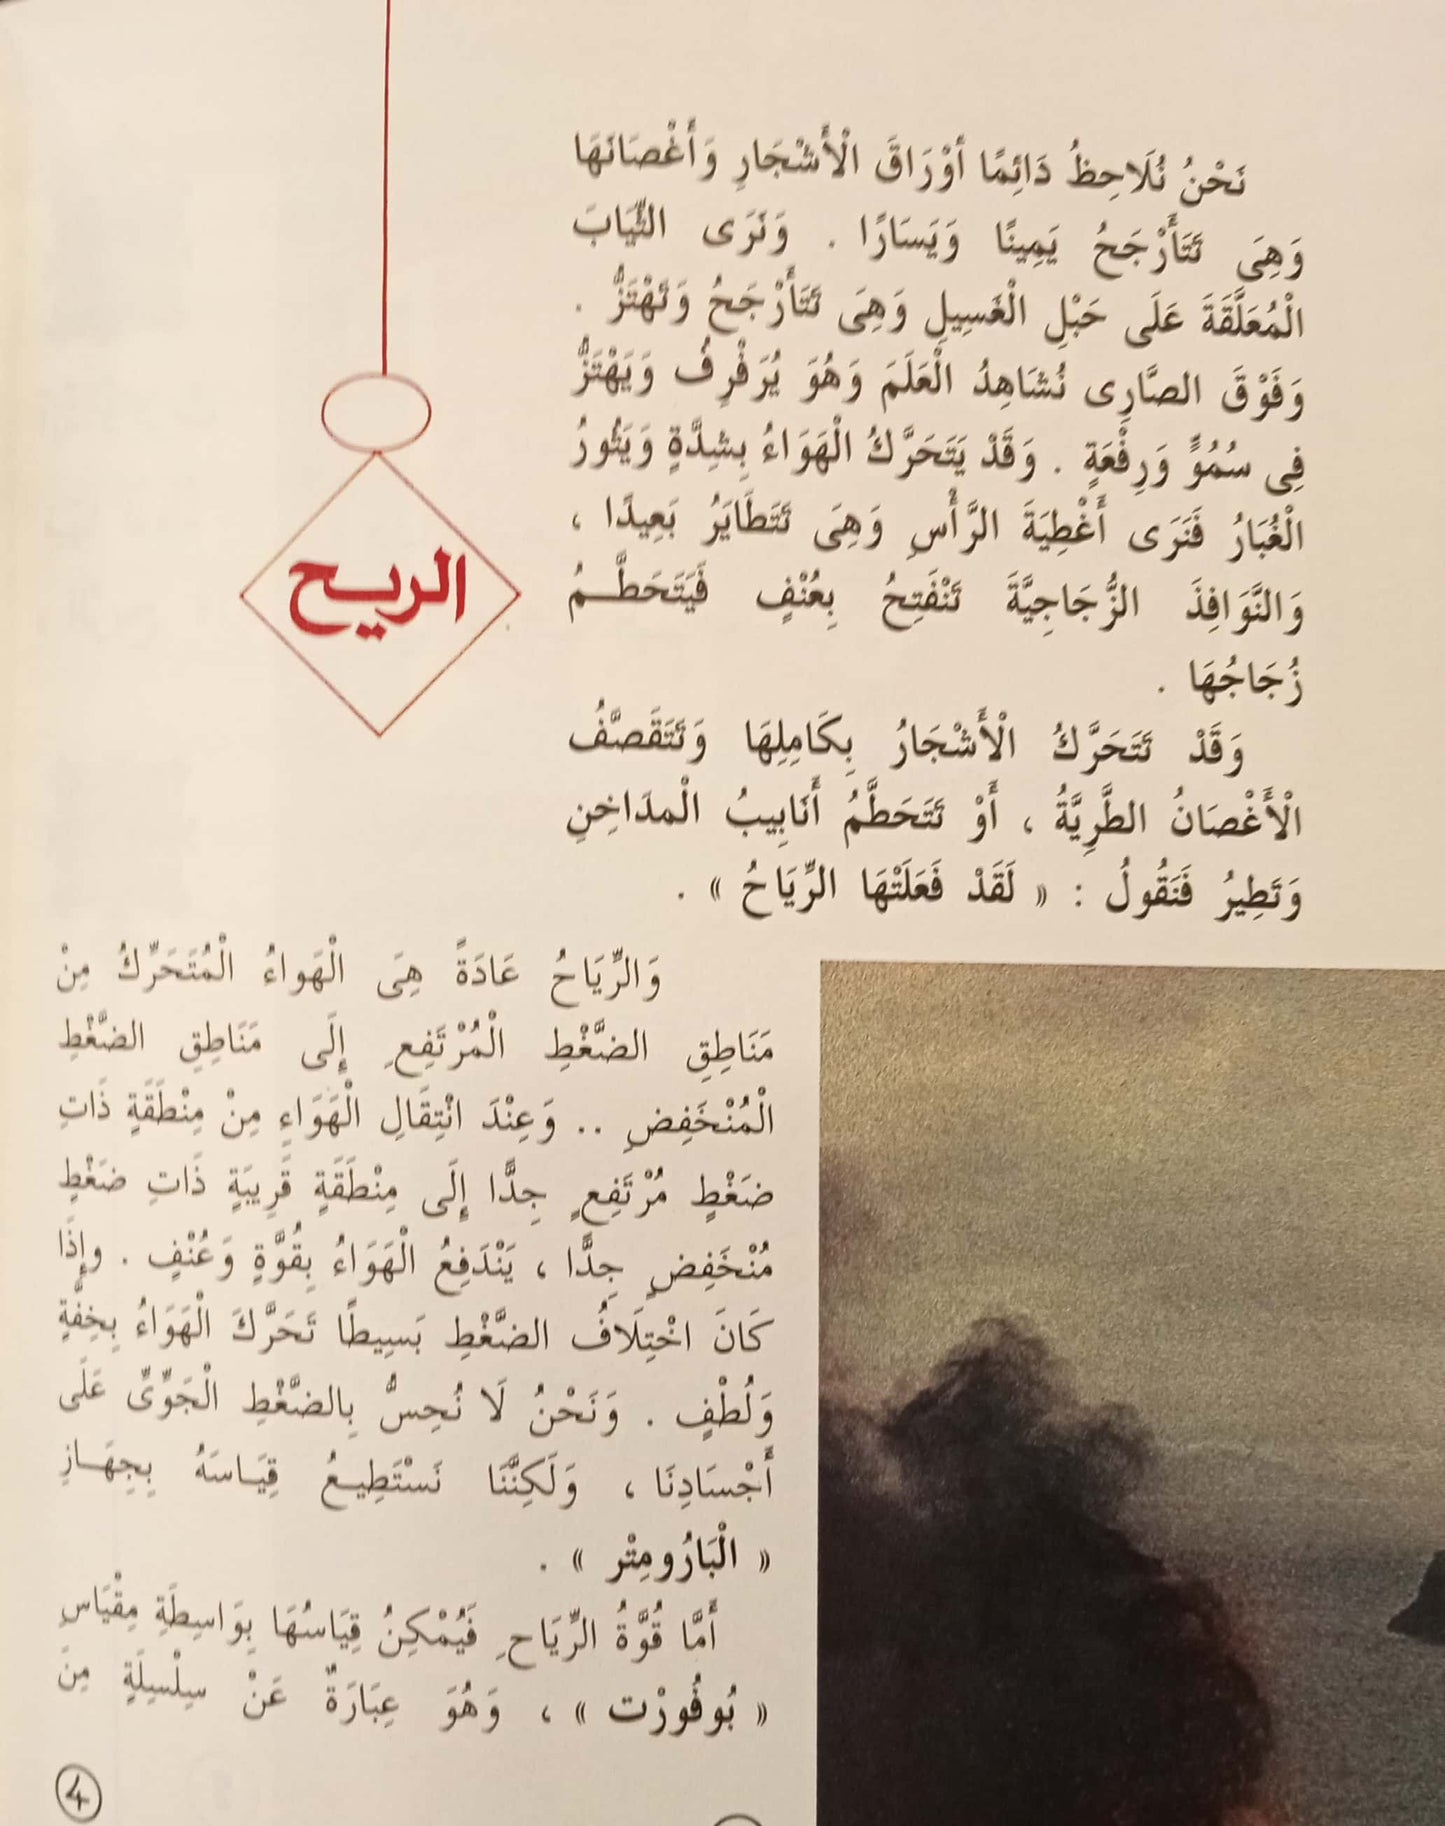 الريح - 29 السماوات والأرض وما بينهما سلسلة علوم جاء ذكرها في القرآن